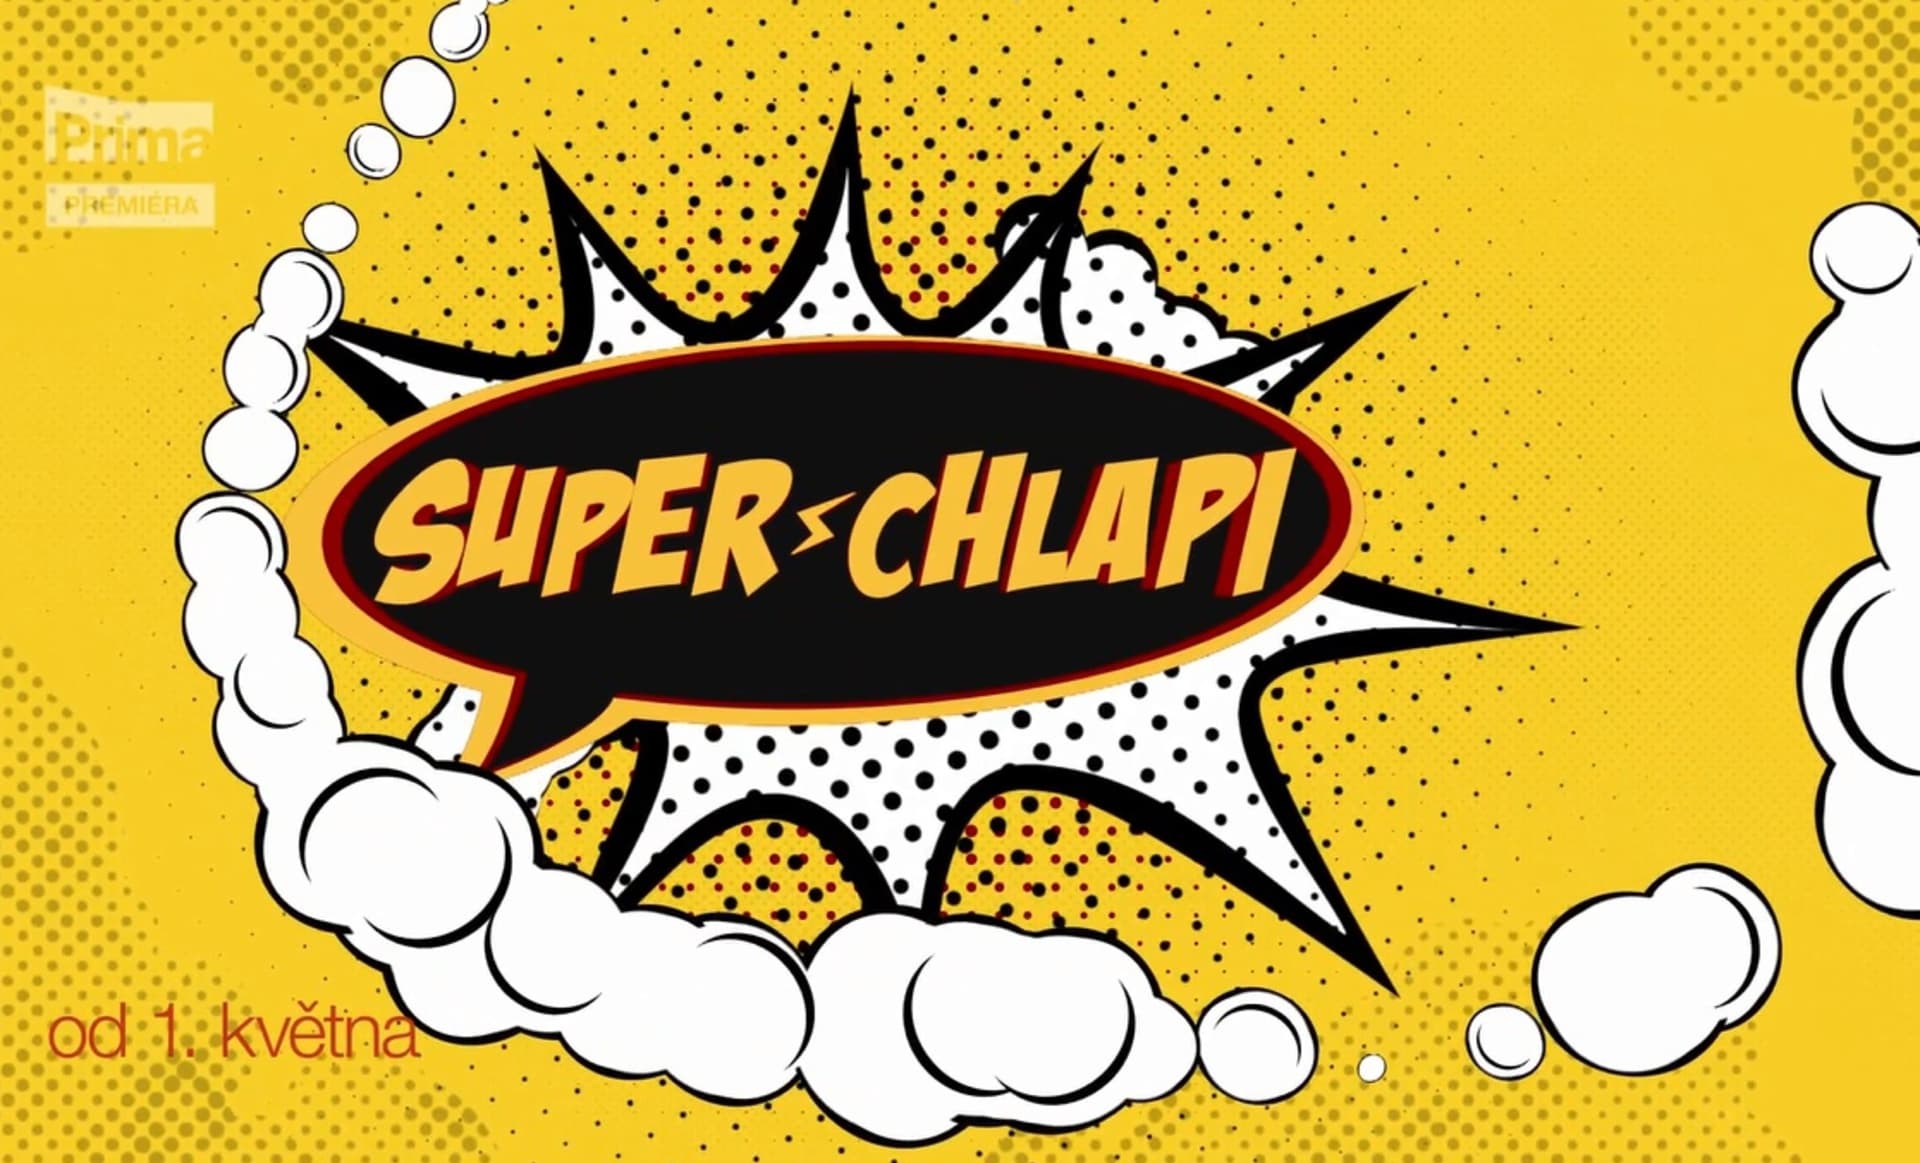 Premiéra show Superchlapi začáná 1. května ve 21.35 na Primě